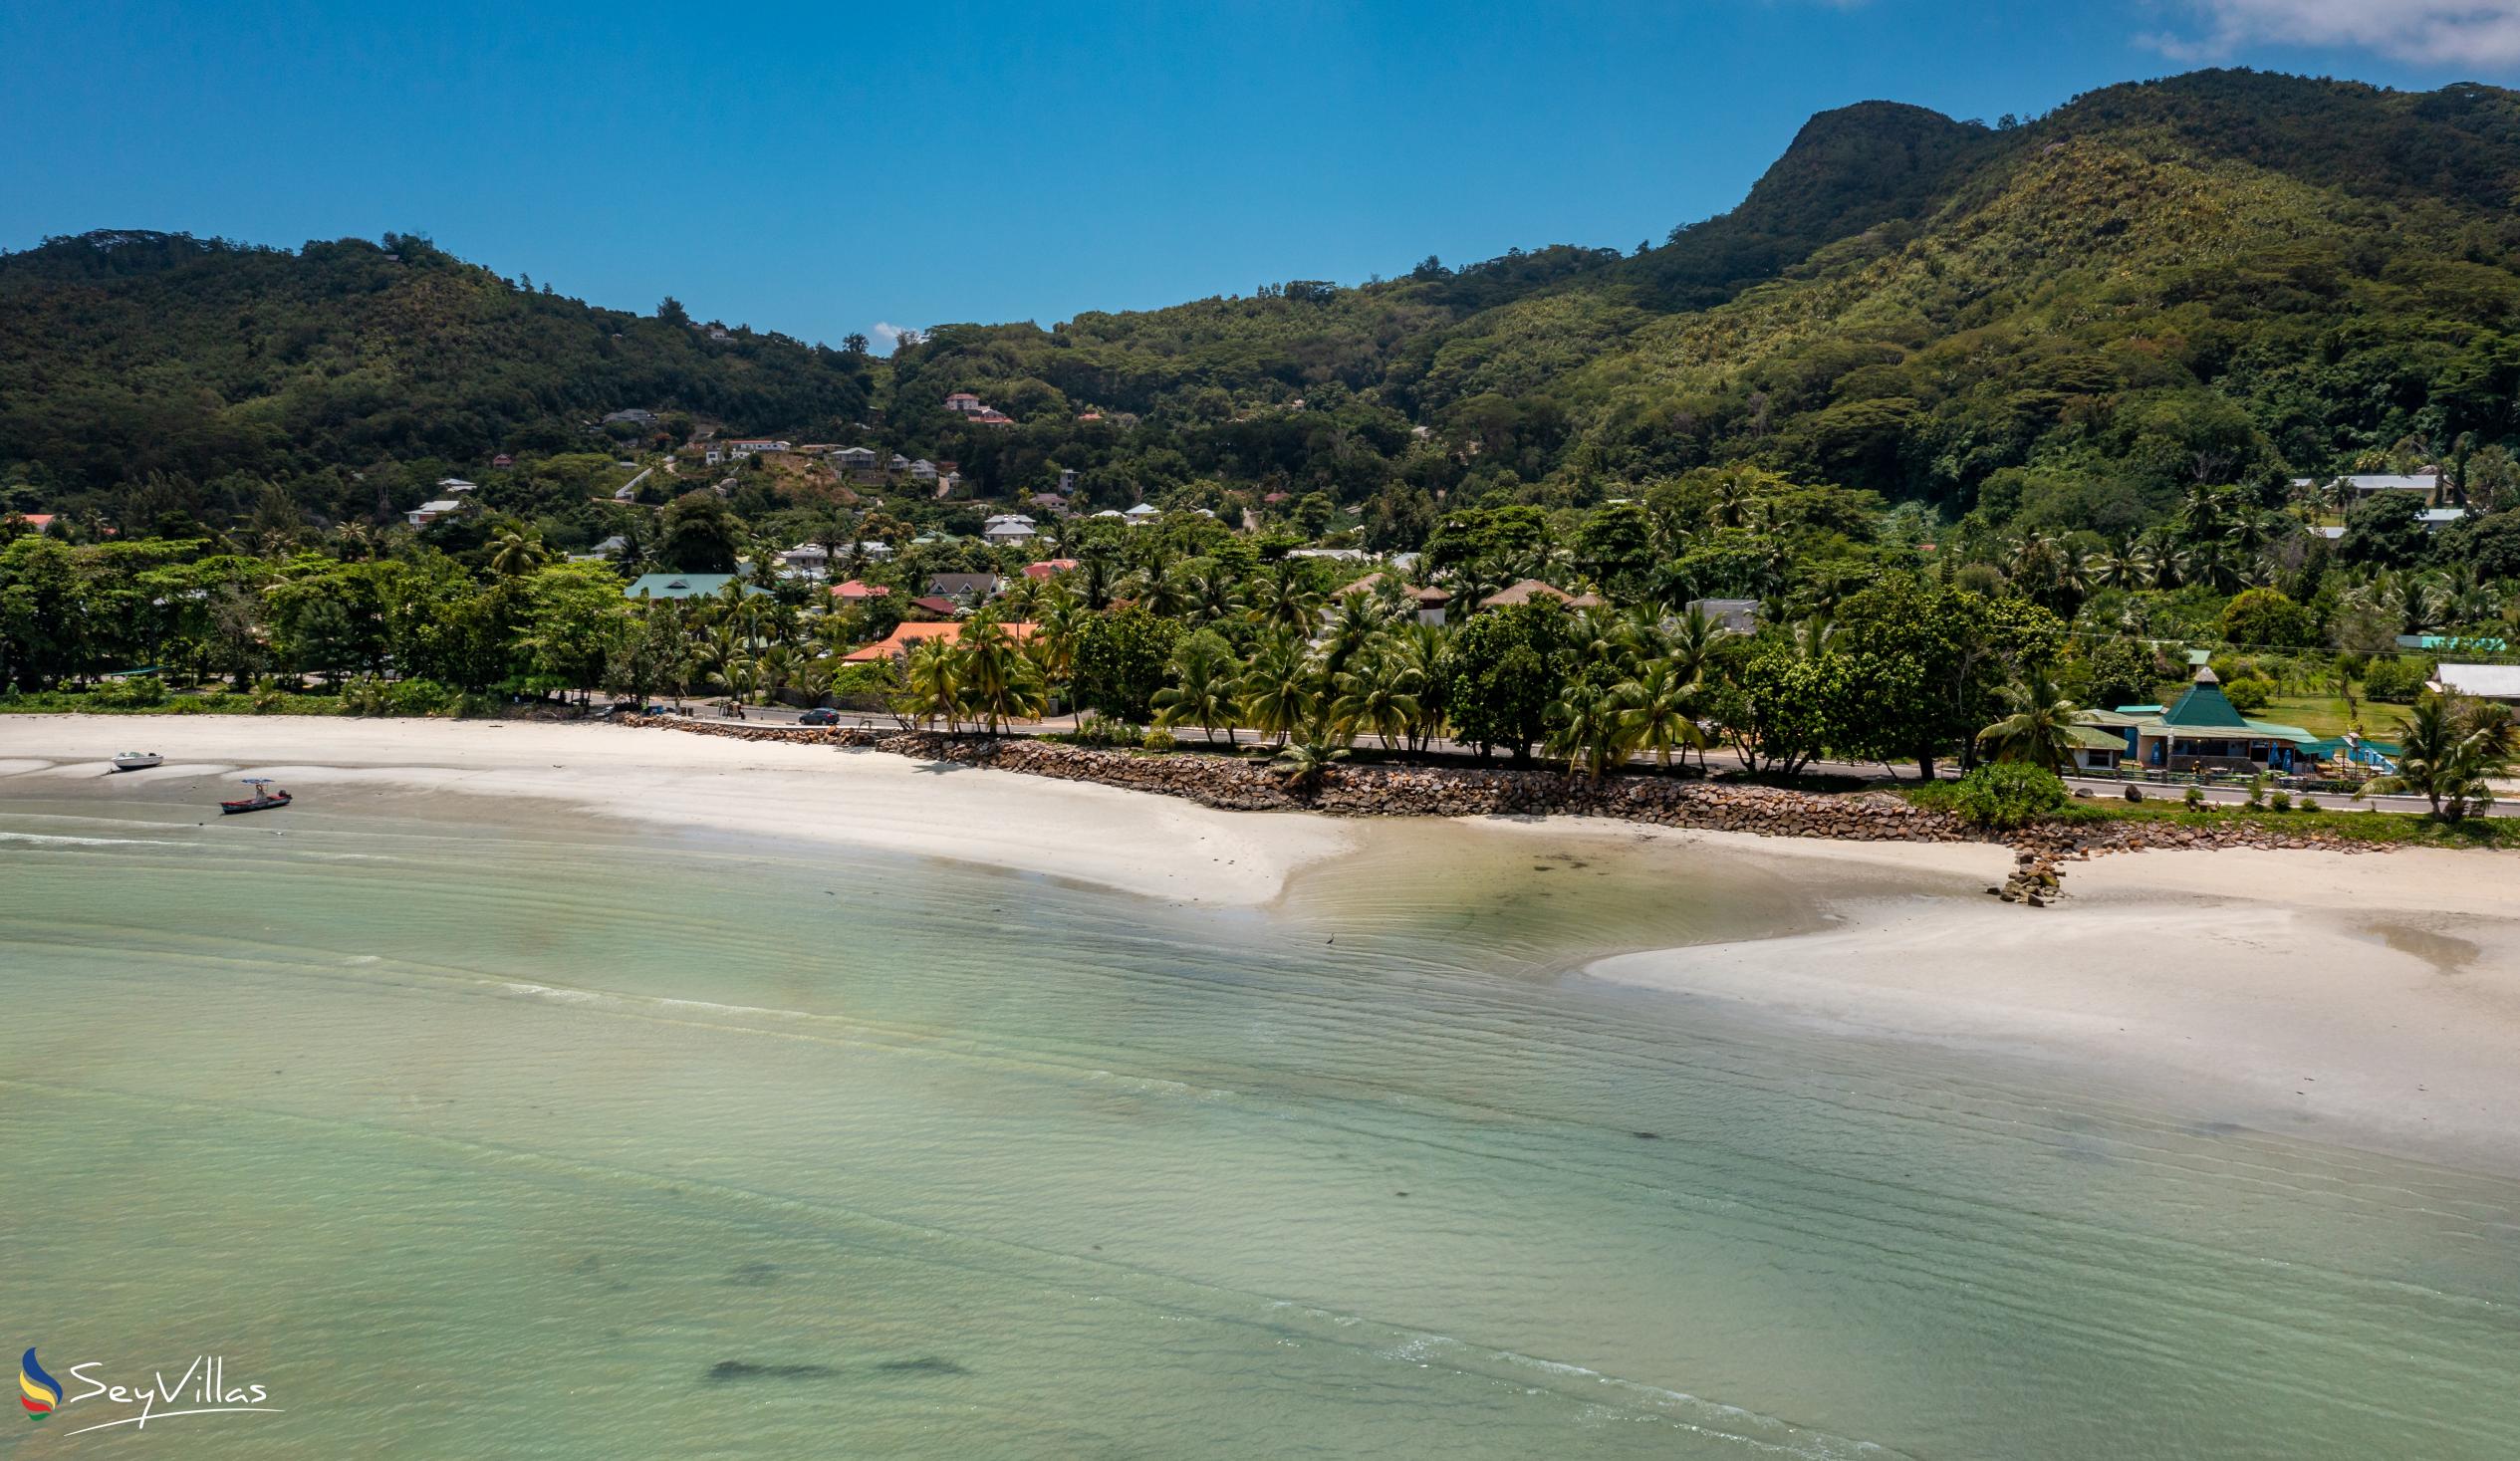 Foto 29: Blue Lagoon - Posizione - Mahé (Seychelles)